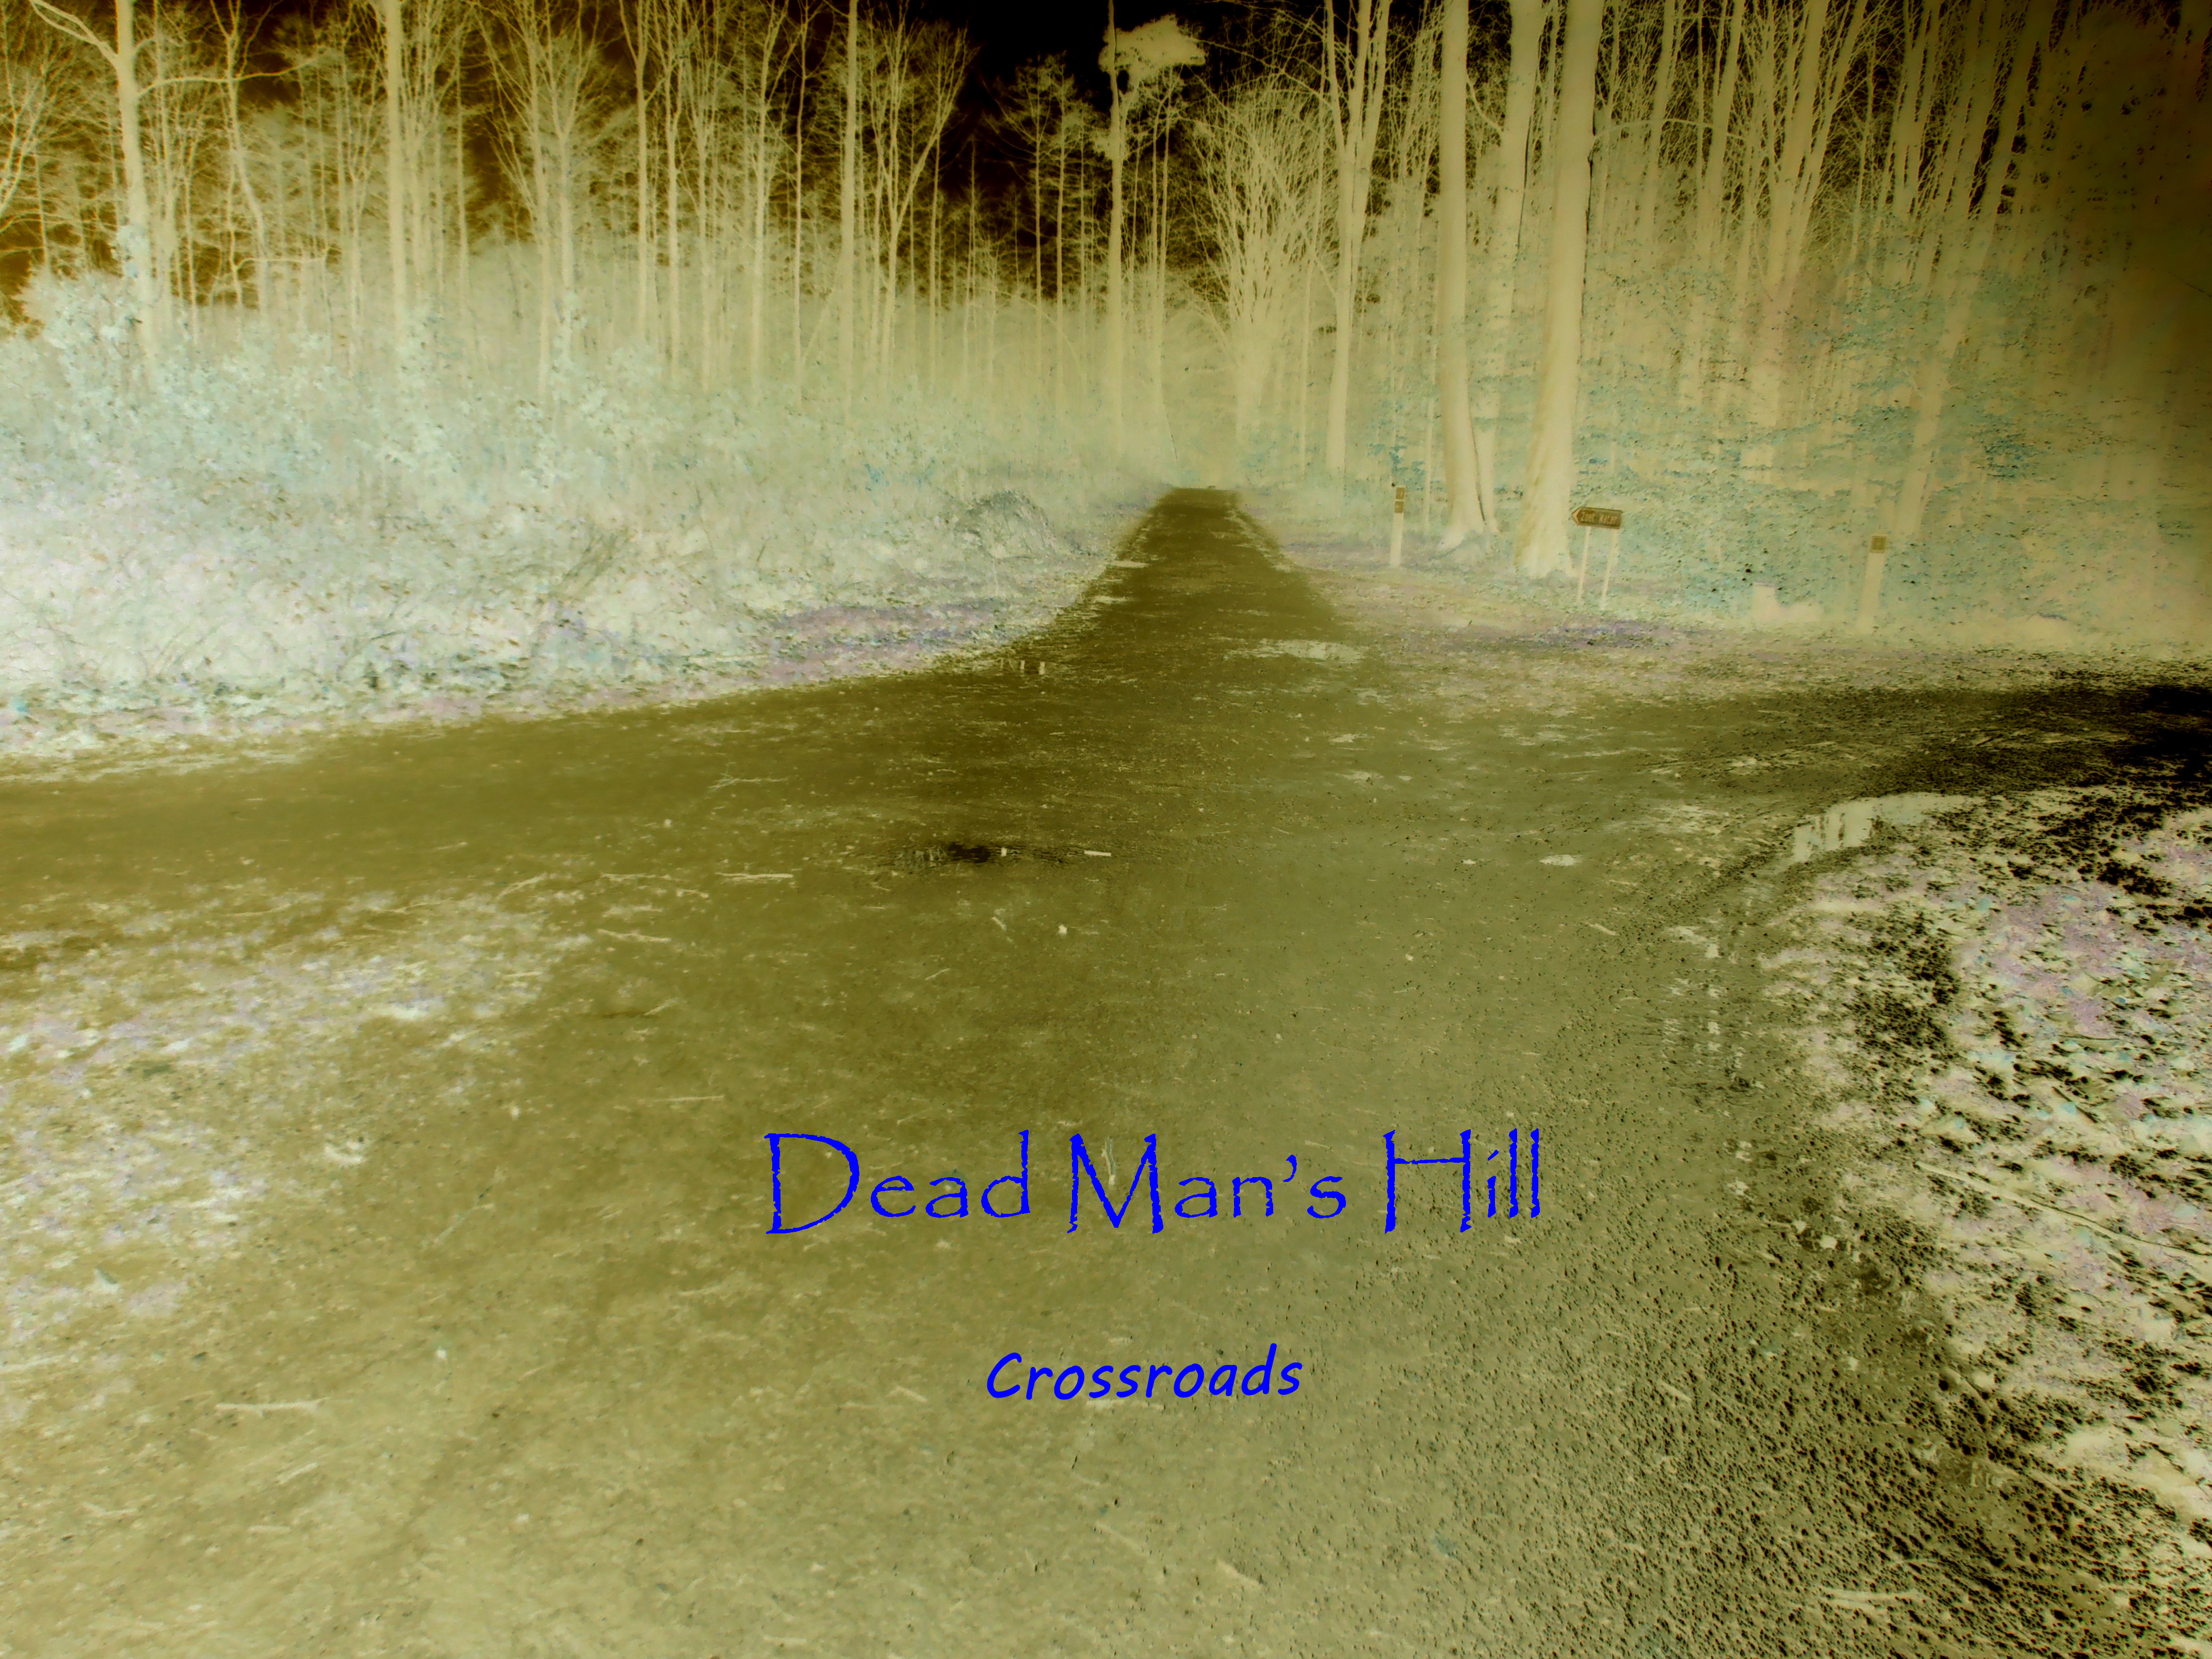 Dead Man's Hill - Crossroads